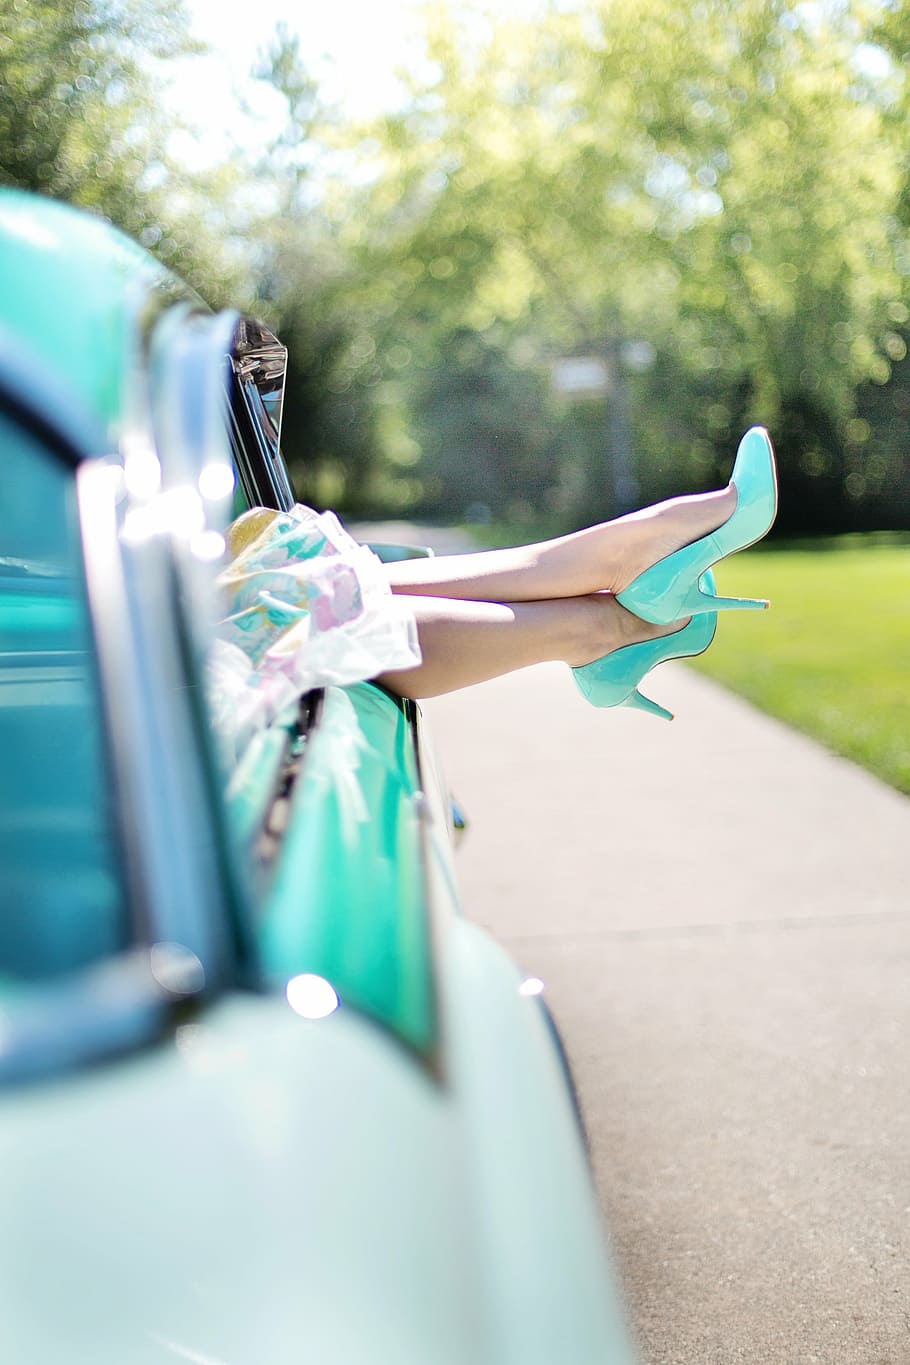 selectivo, fotografía de enfoque, persona, vistiendo, zapatos de tacón de color verde azulado, piernas de mujer, tacones altos, coches antiguos, turquesa, 1950